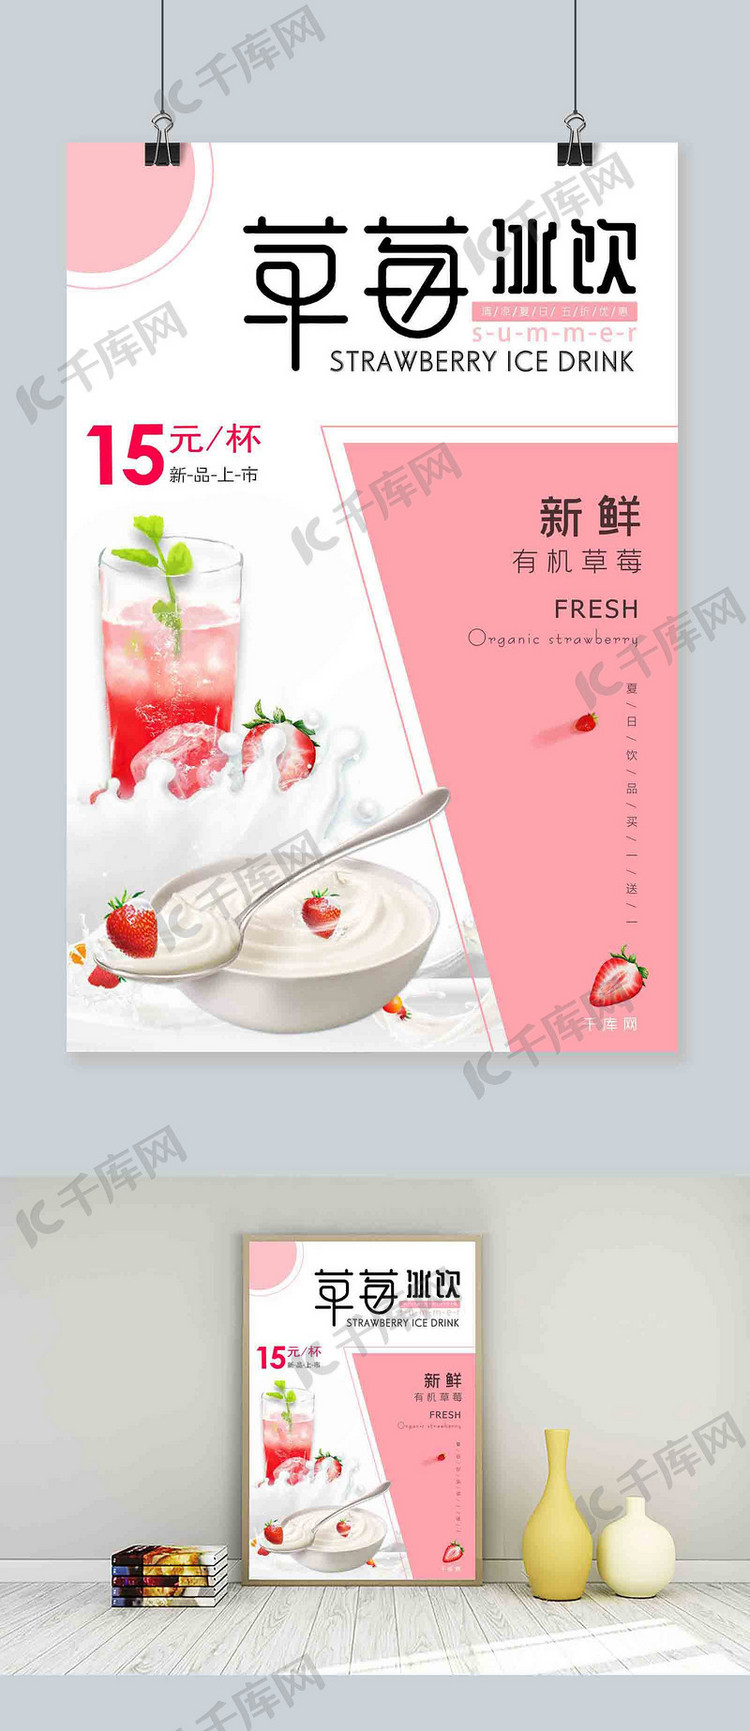 浅色不规则图形背景夏日五折优惠草莓冰饮海报